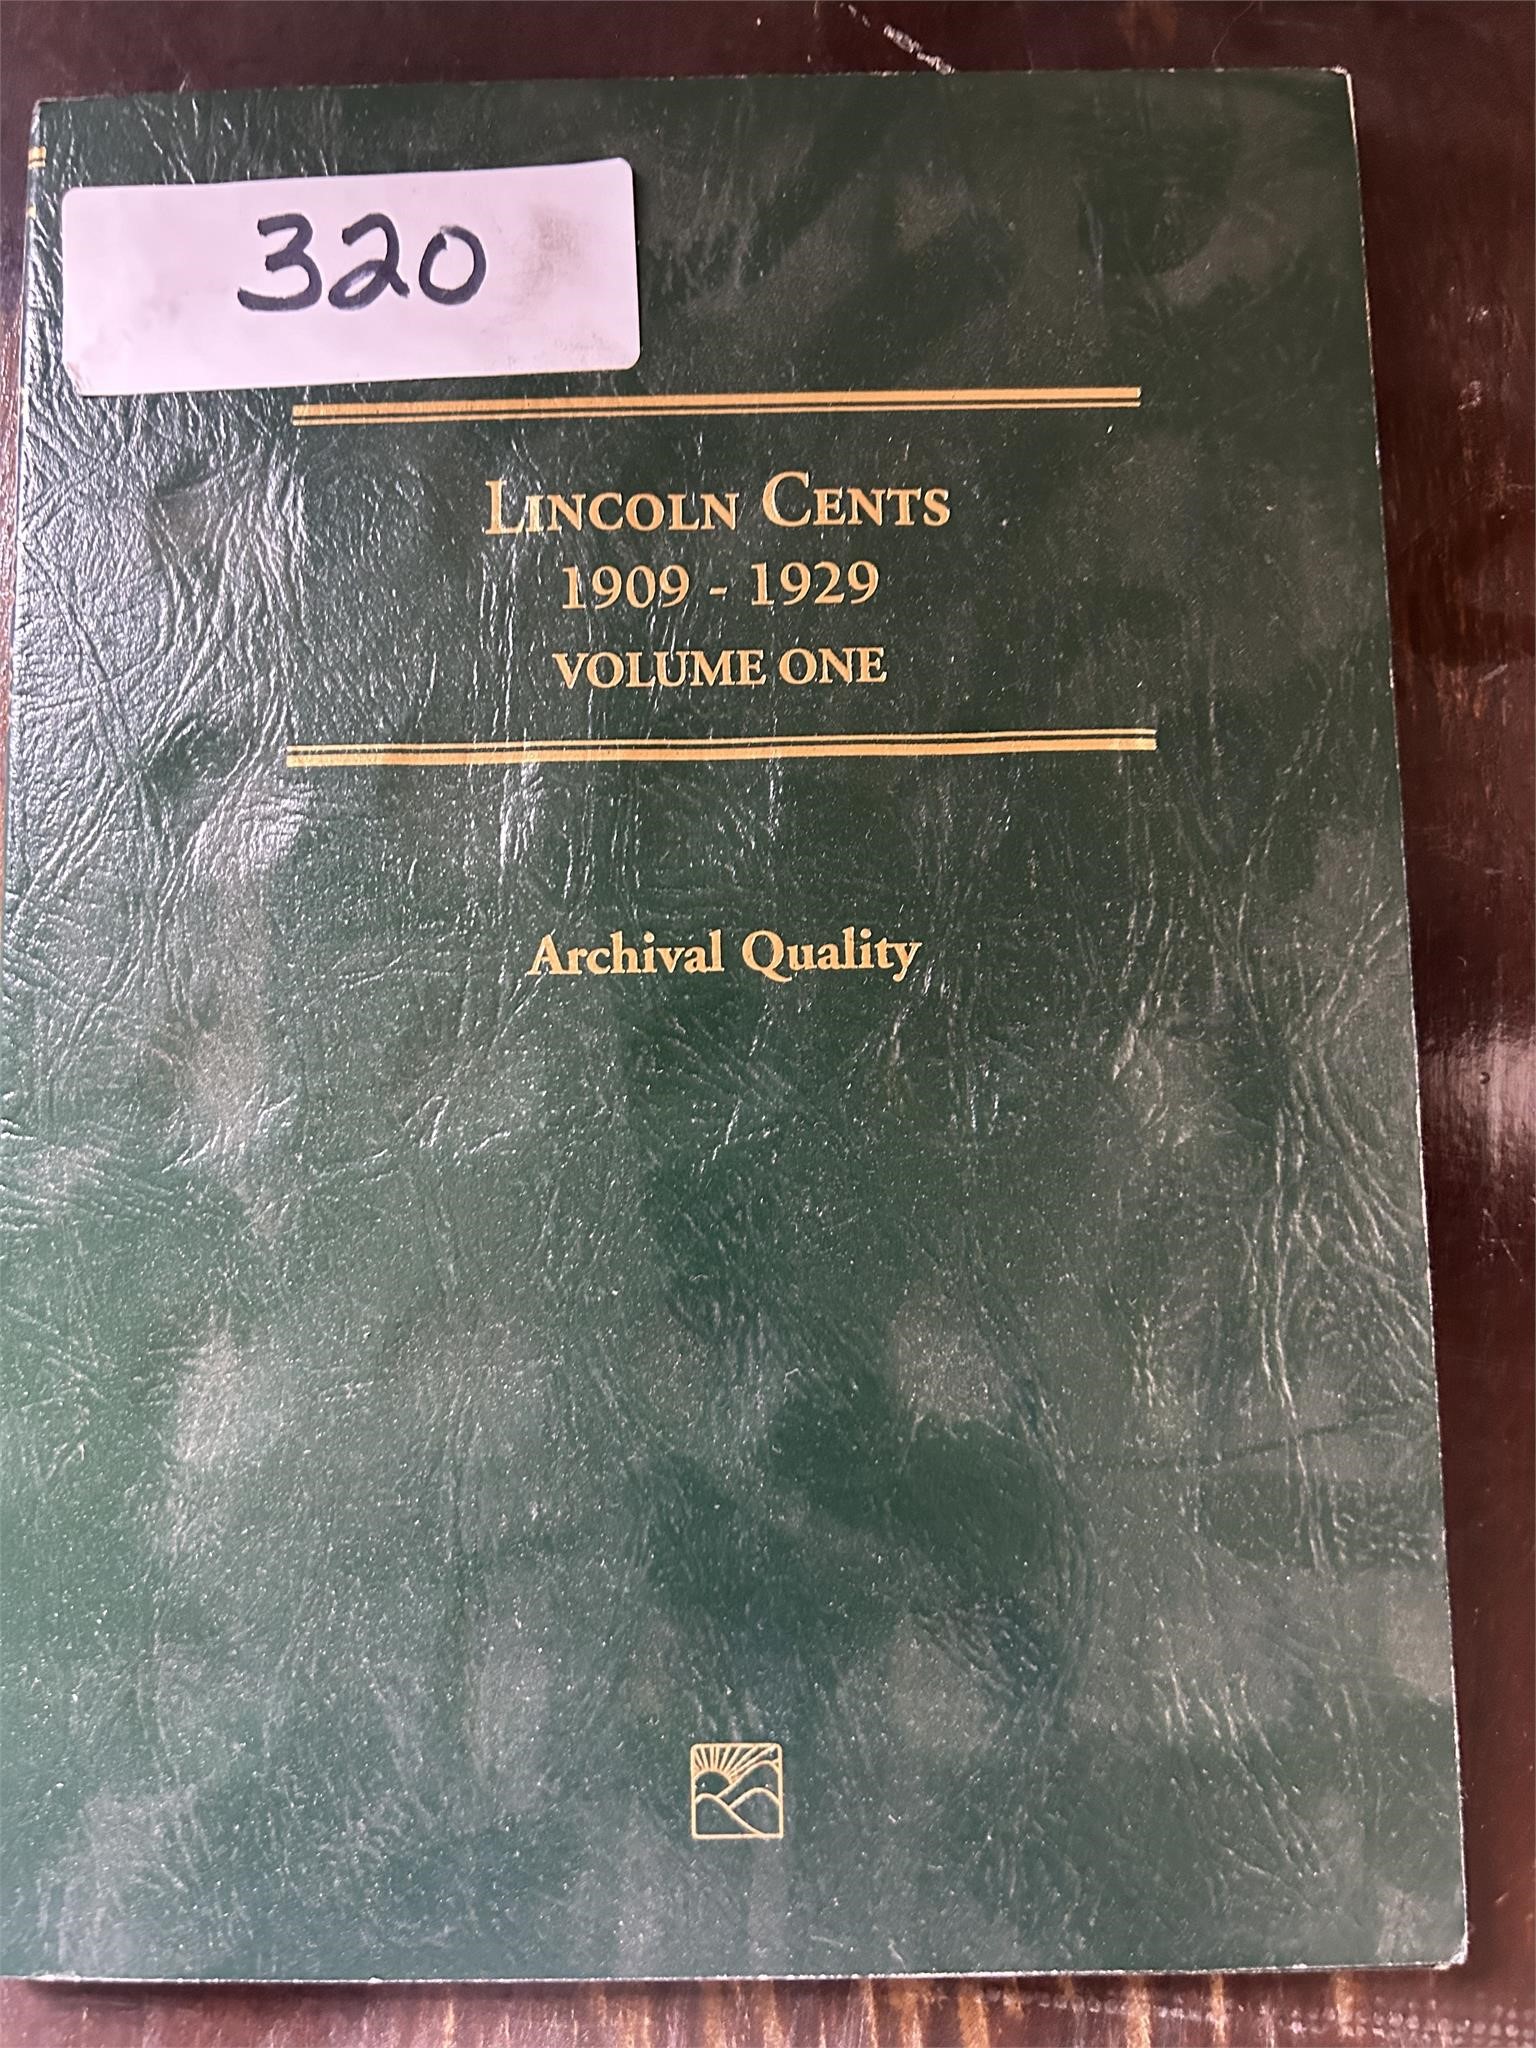 Lincoln Cent book empty